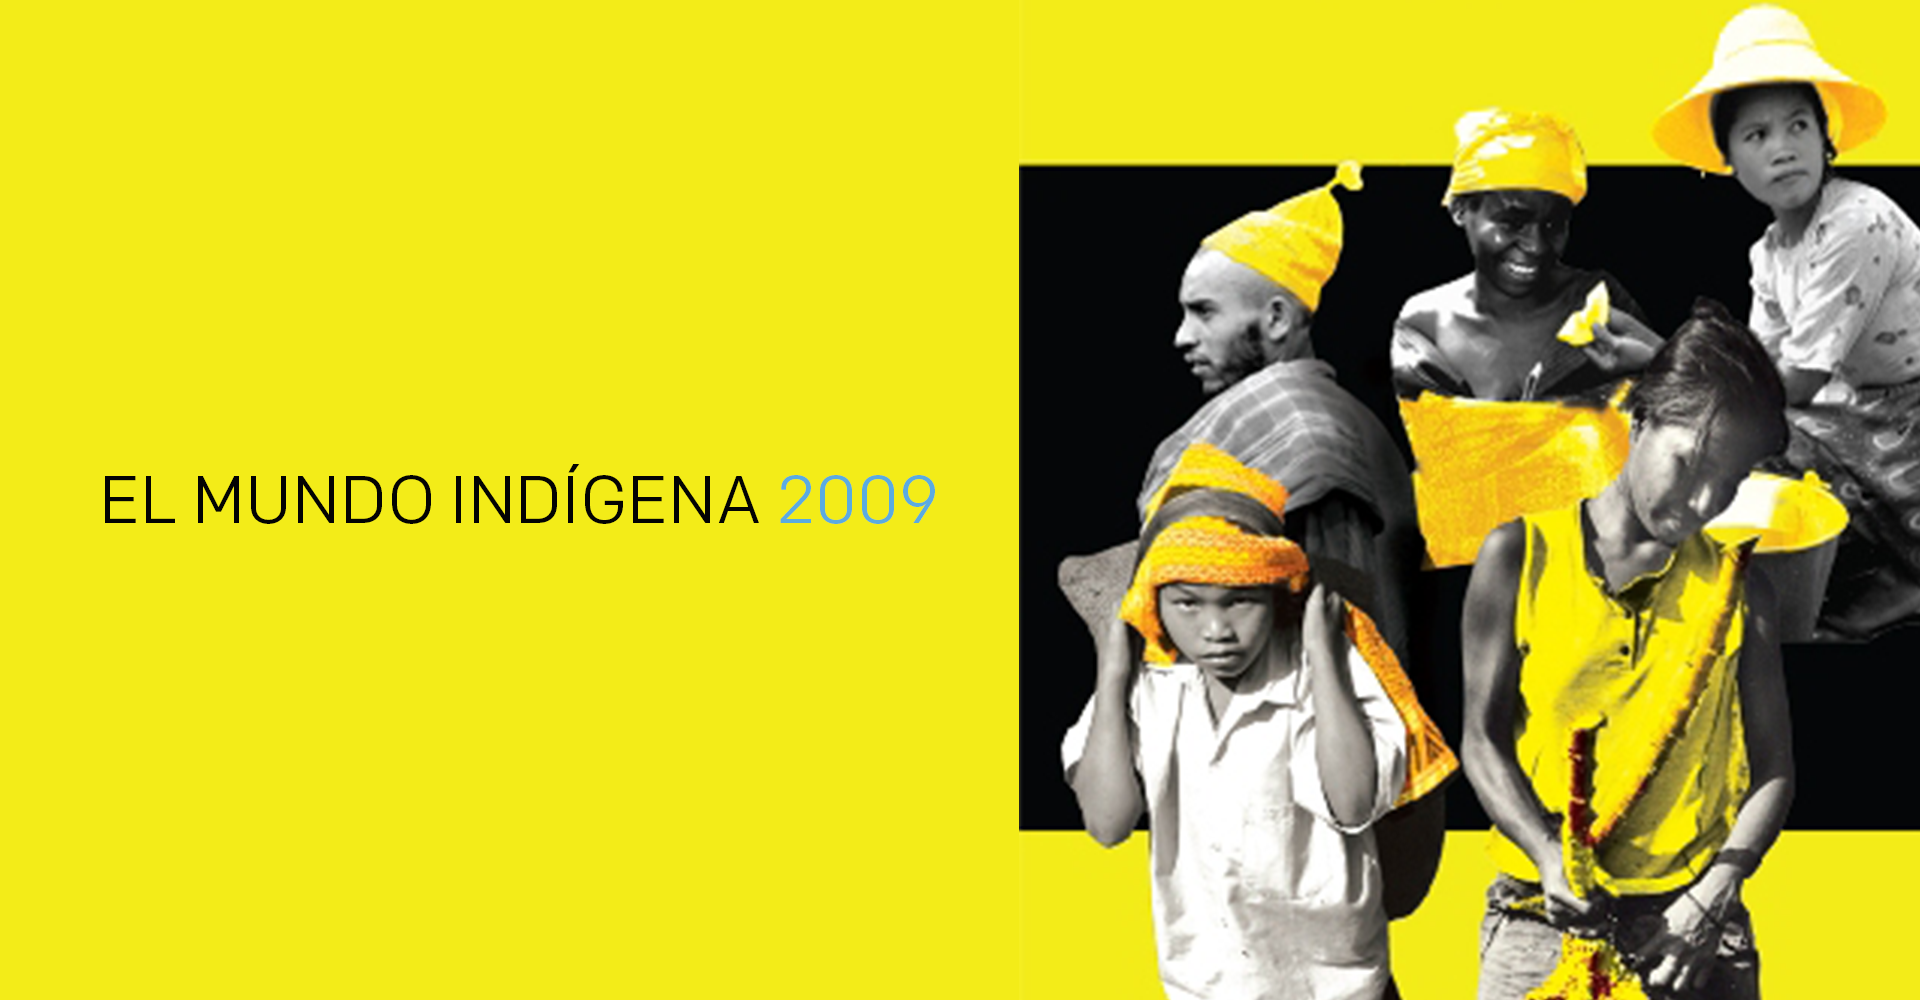 El Mundo Indigena 2009